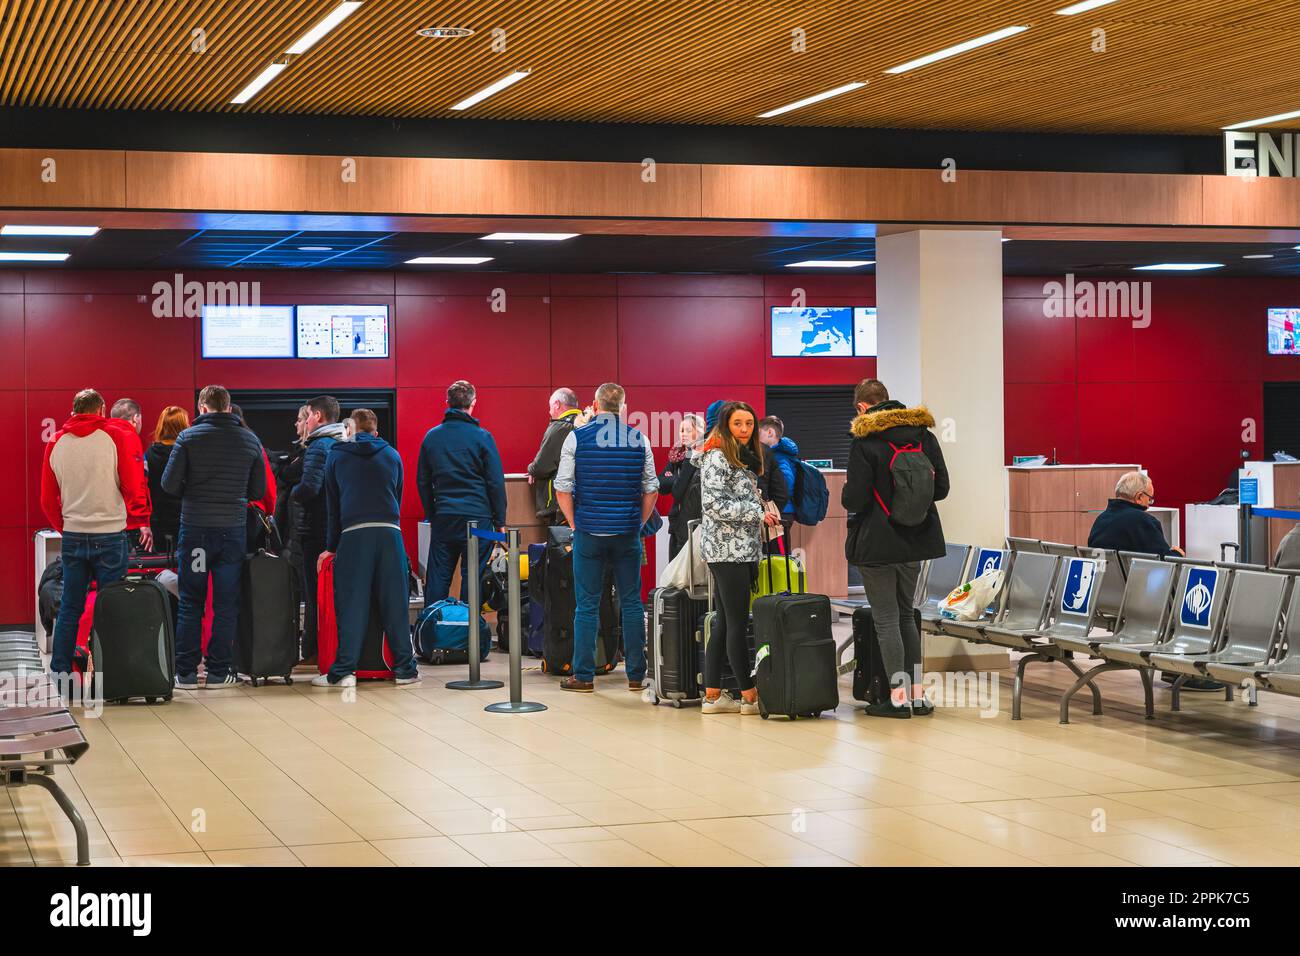 Personen, die mit Gepäck in einer Schlange für Check-in und Abflug stehen, Perpignan Flughafen Stockfoto